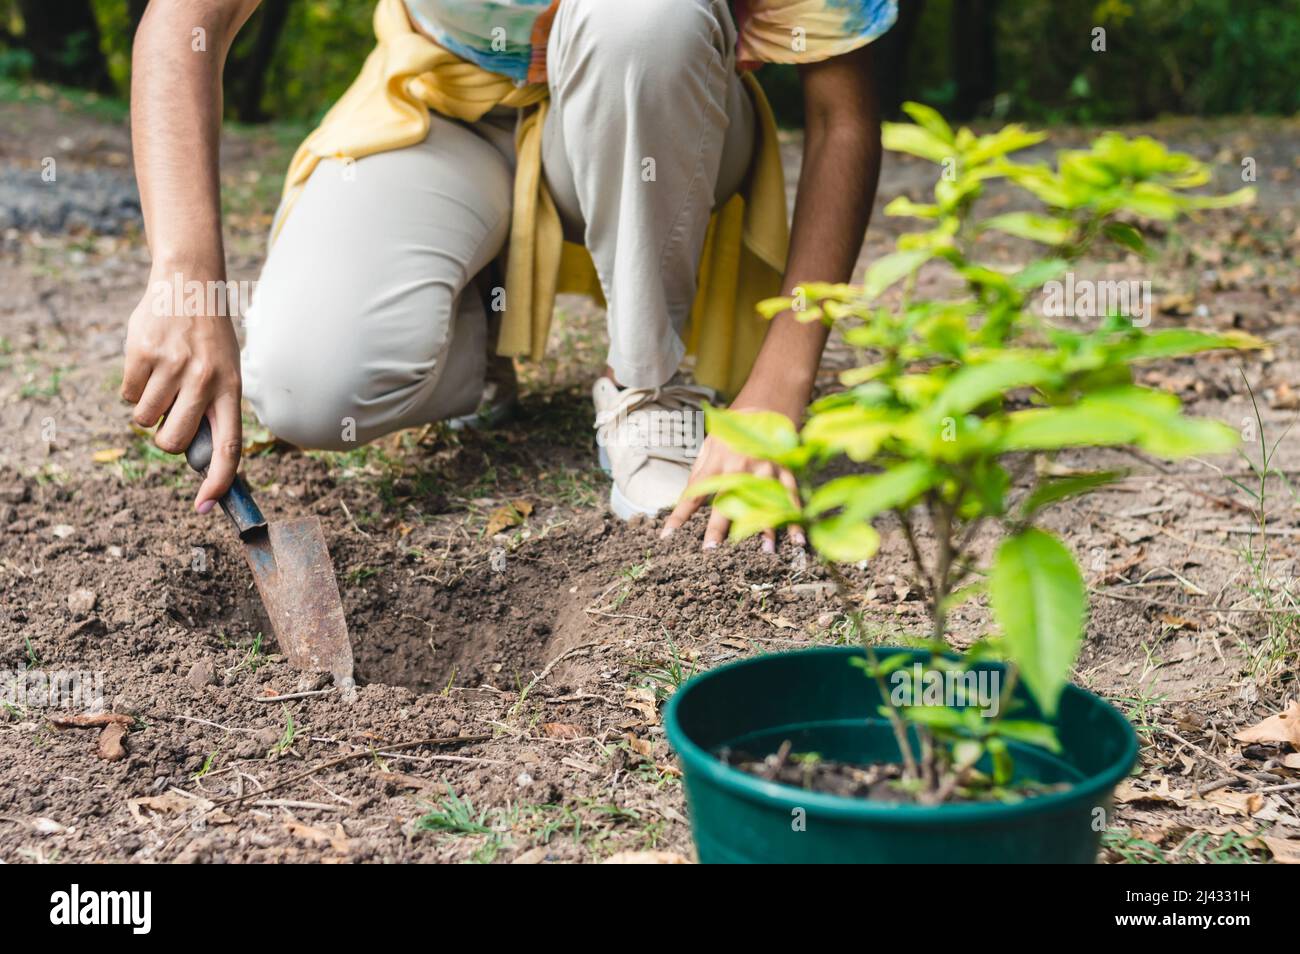 una joven morena irreconocible agachada en una granja cavando un agujero con una pala manual para plantar un árbol, transplantando un lirio paraguayo trabajando para Foto de stock